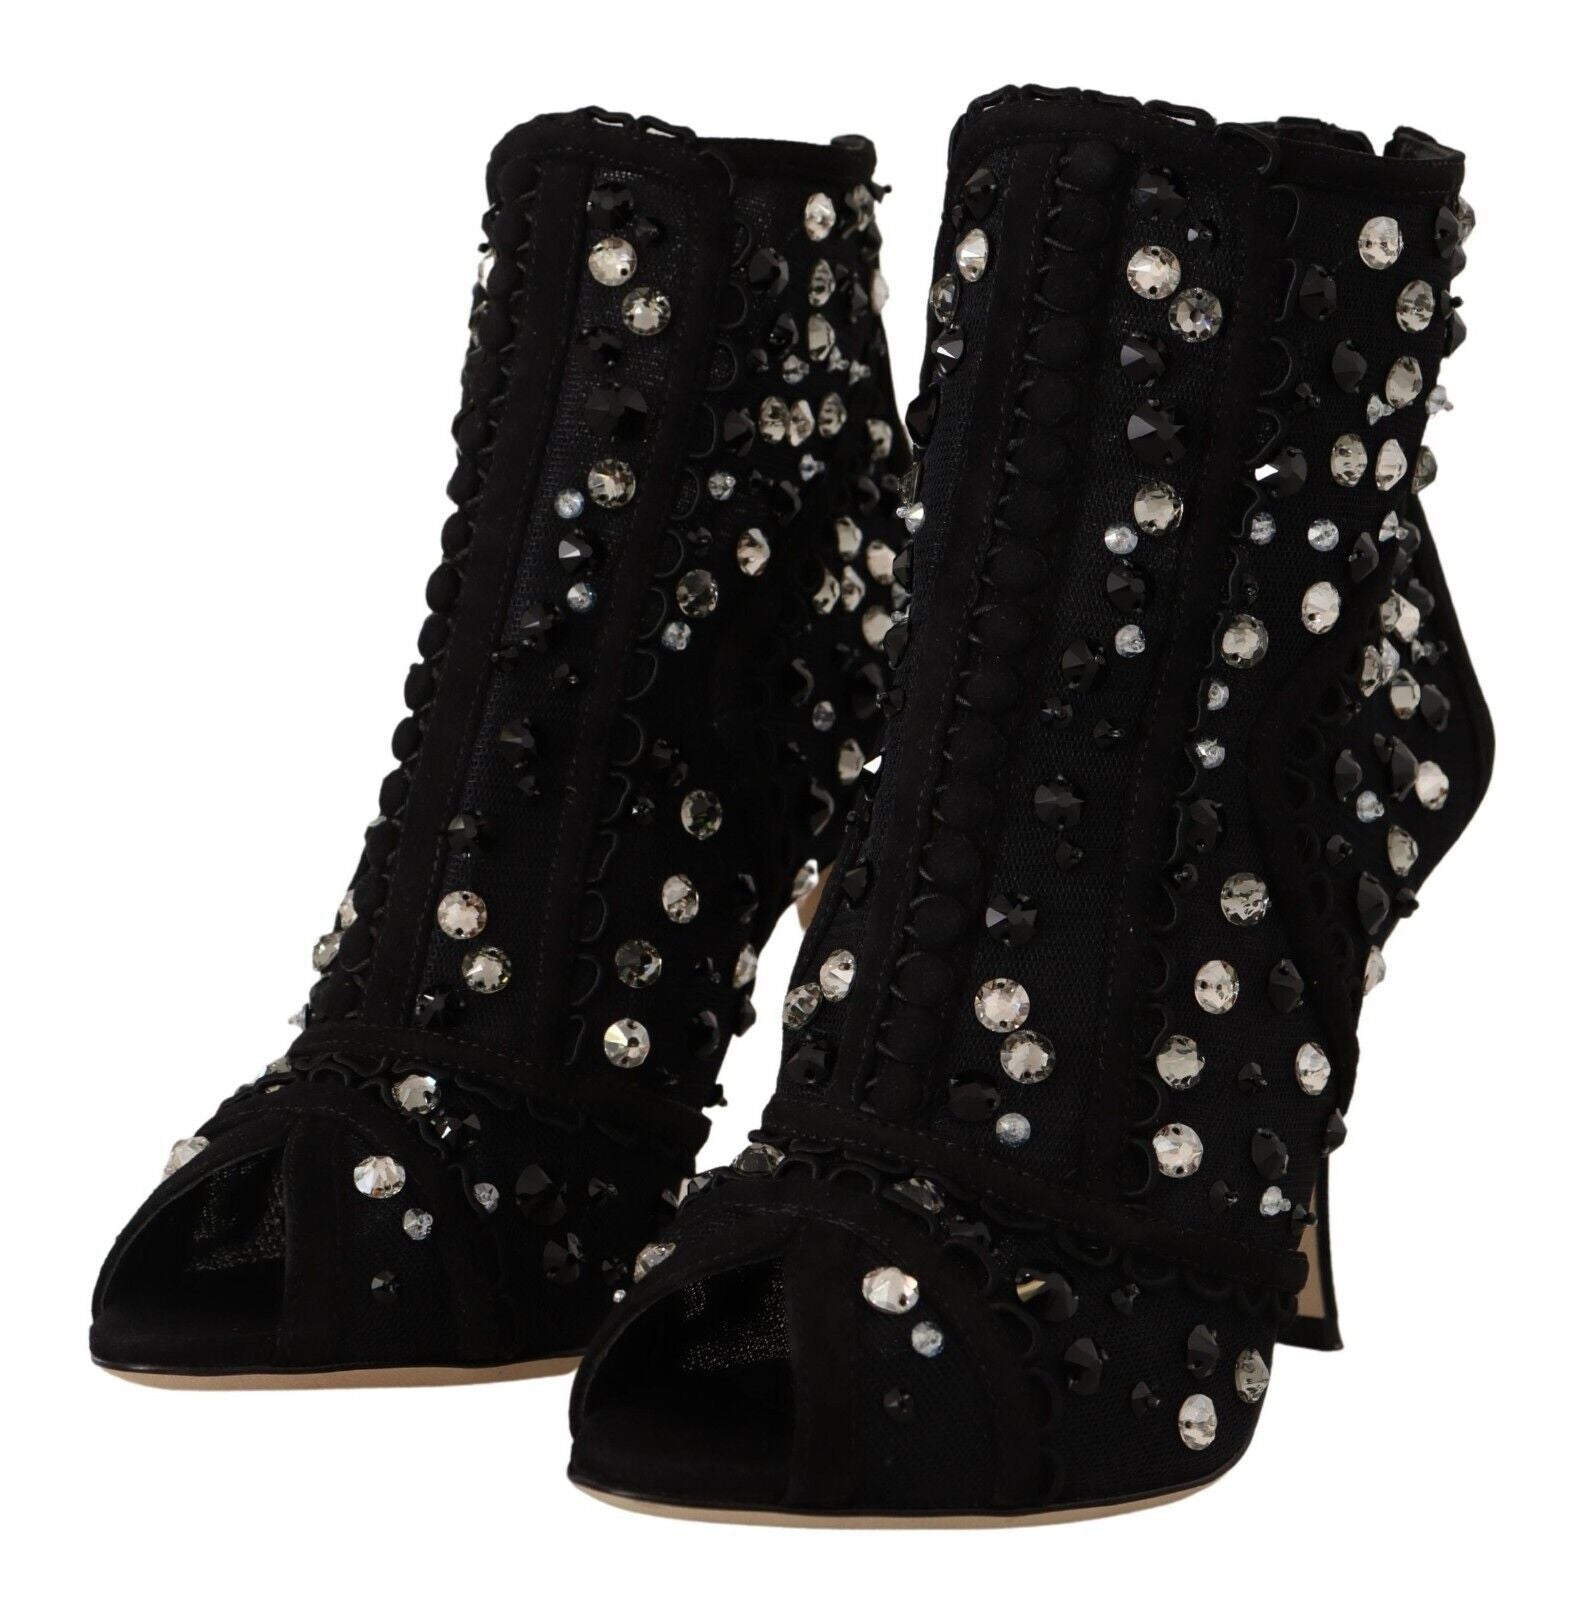 Dolce & Gabbana Black Crystals Heels Zipper Short Boots | Fashionsarah.com